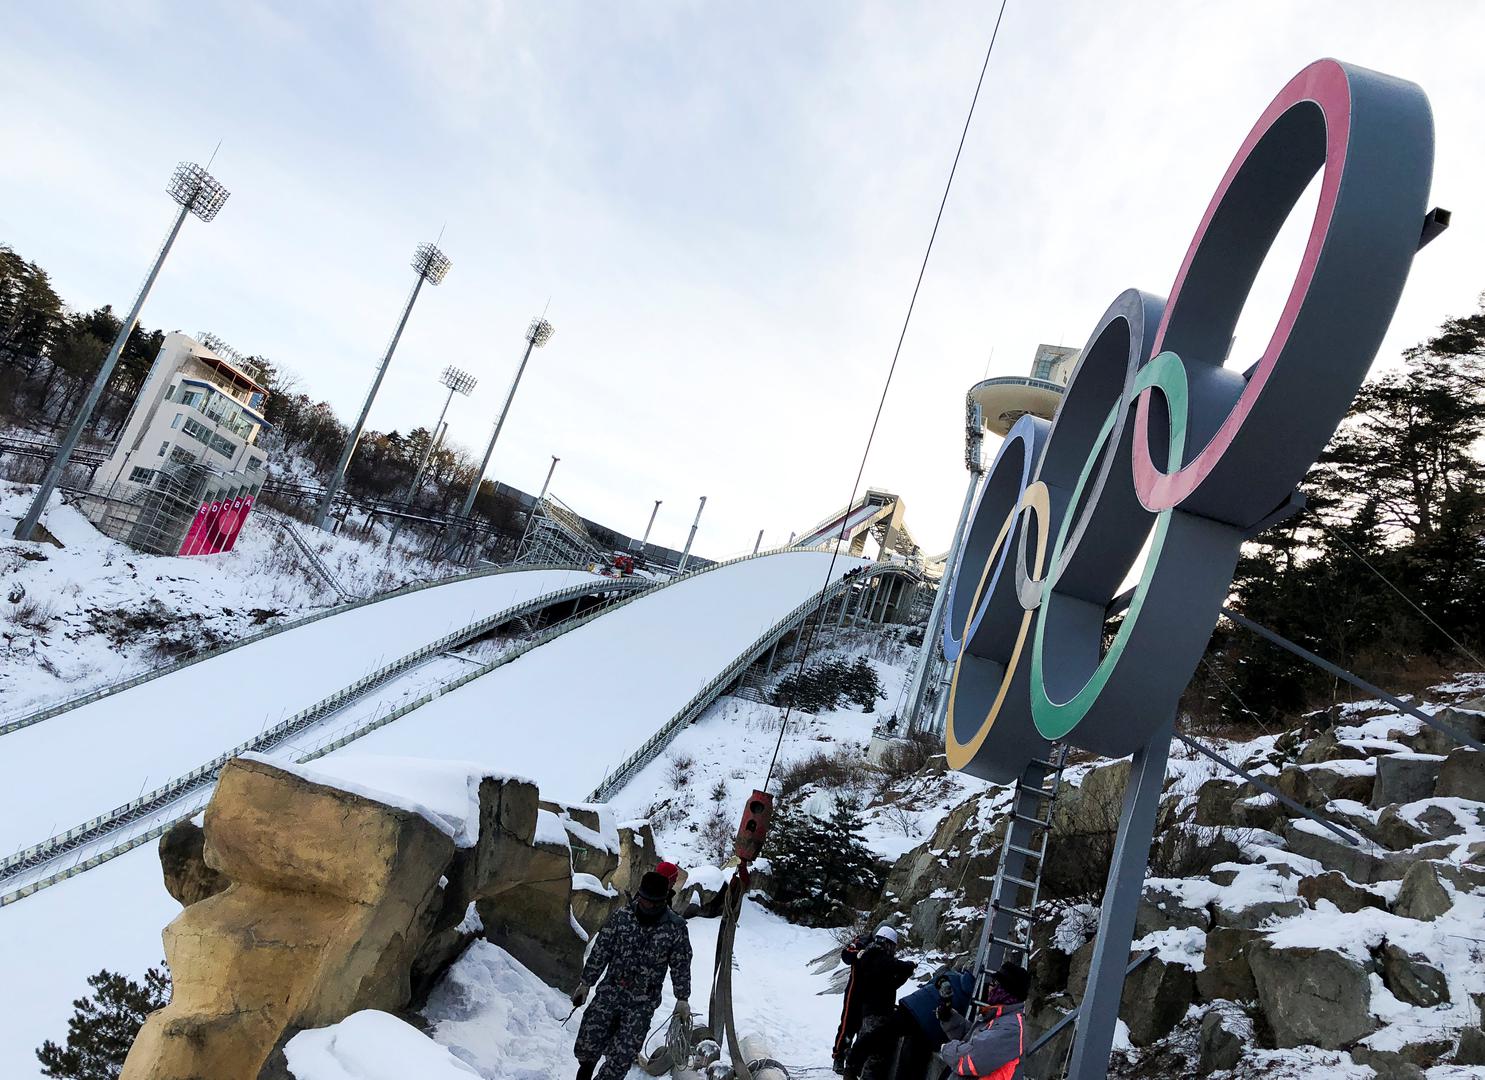 Međunarodni olimpijski odbor (MOO) povećao je broj disciplina na XXIII. Zimskim olimpijskim igrama pa će se u Pjongčangu dijeliti šest kompleta medalja više no u Sočiju 2014.